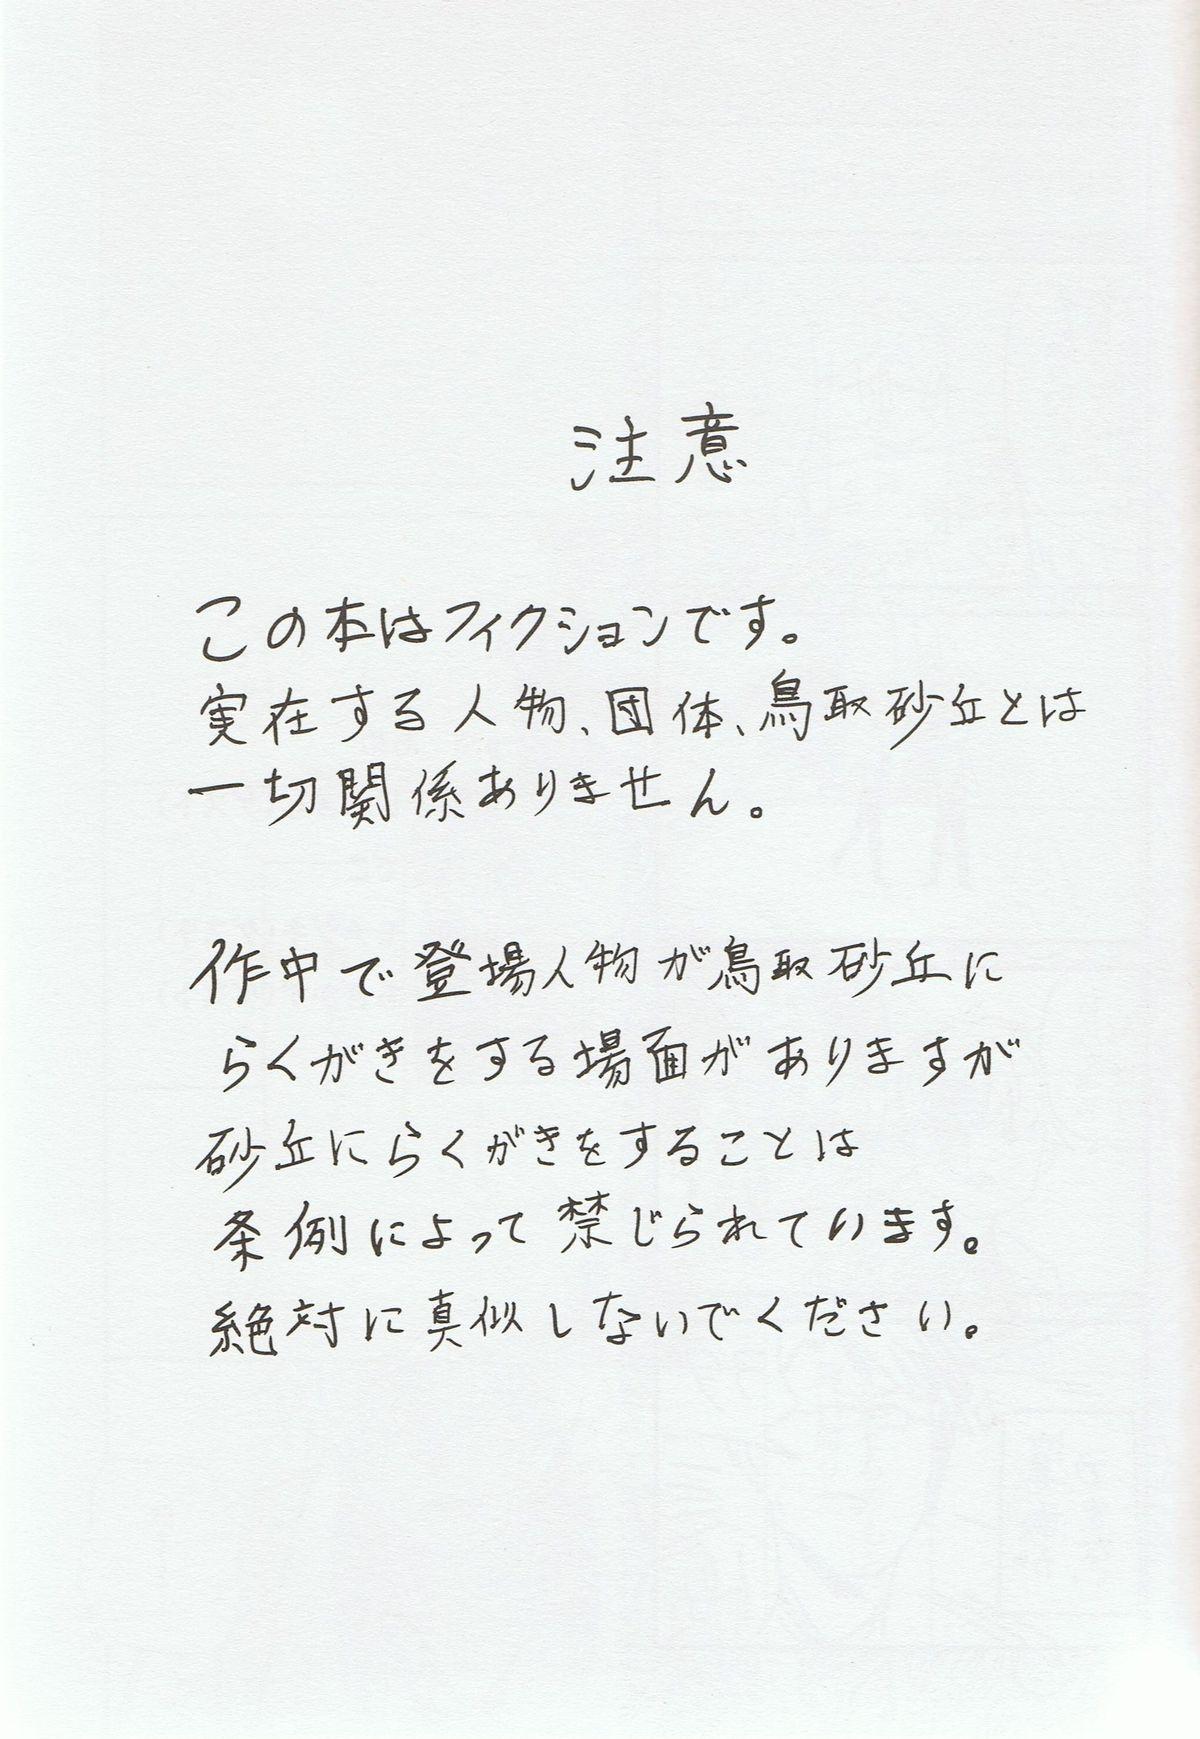 Unshaved Sou da, Tottori Sakyuu Ikou. - Free Gay Longhair - Page 2